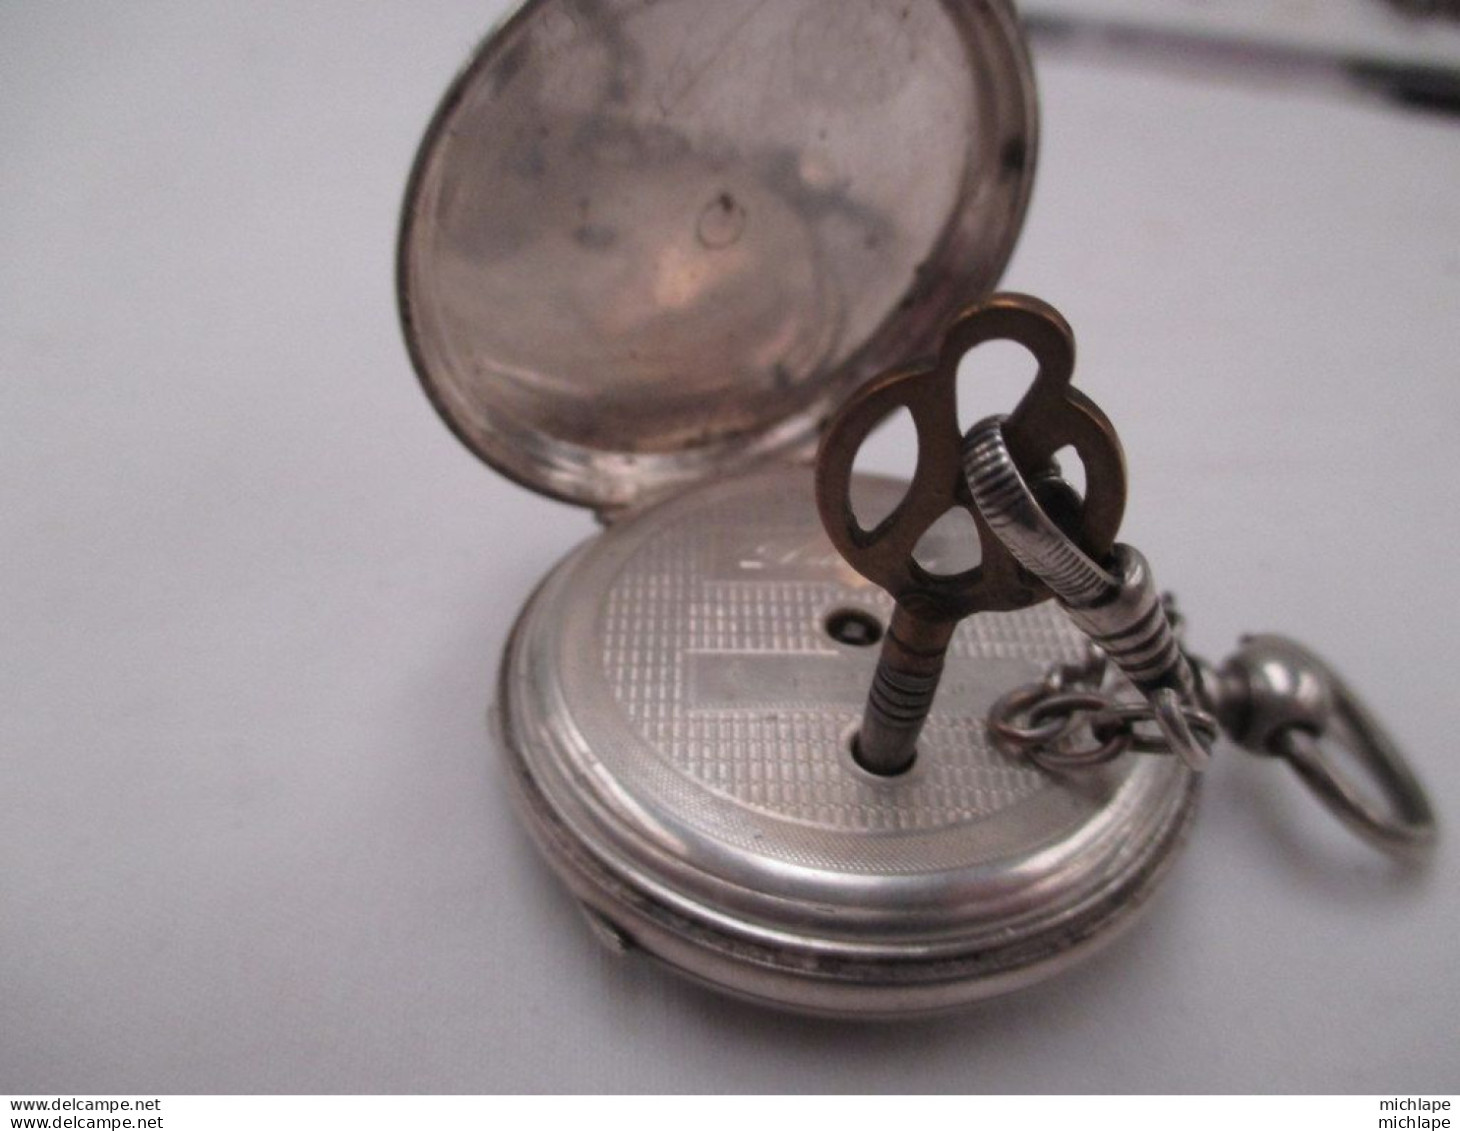 montre de gousset a clef en argent - fonctionnement  parfait  - diamètre 45 mm ( Delorme  a Chateauroux )